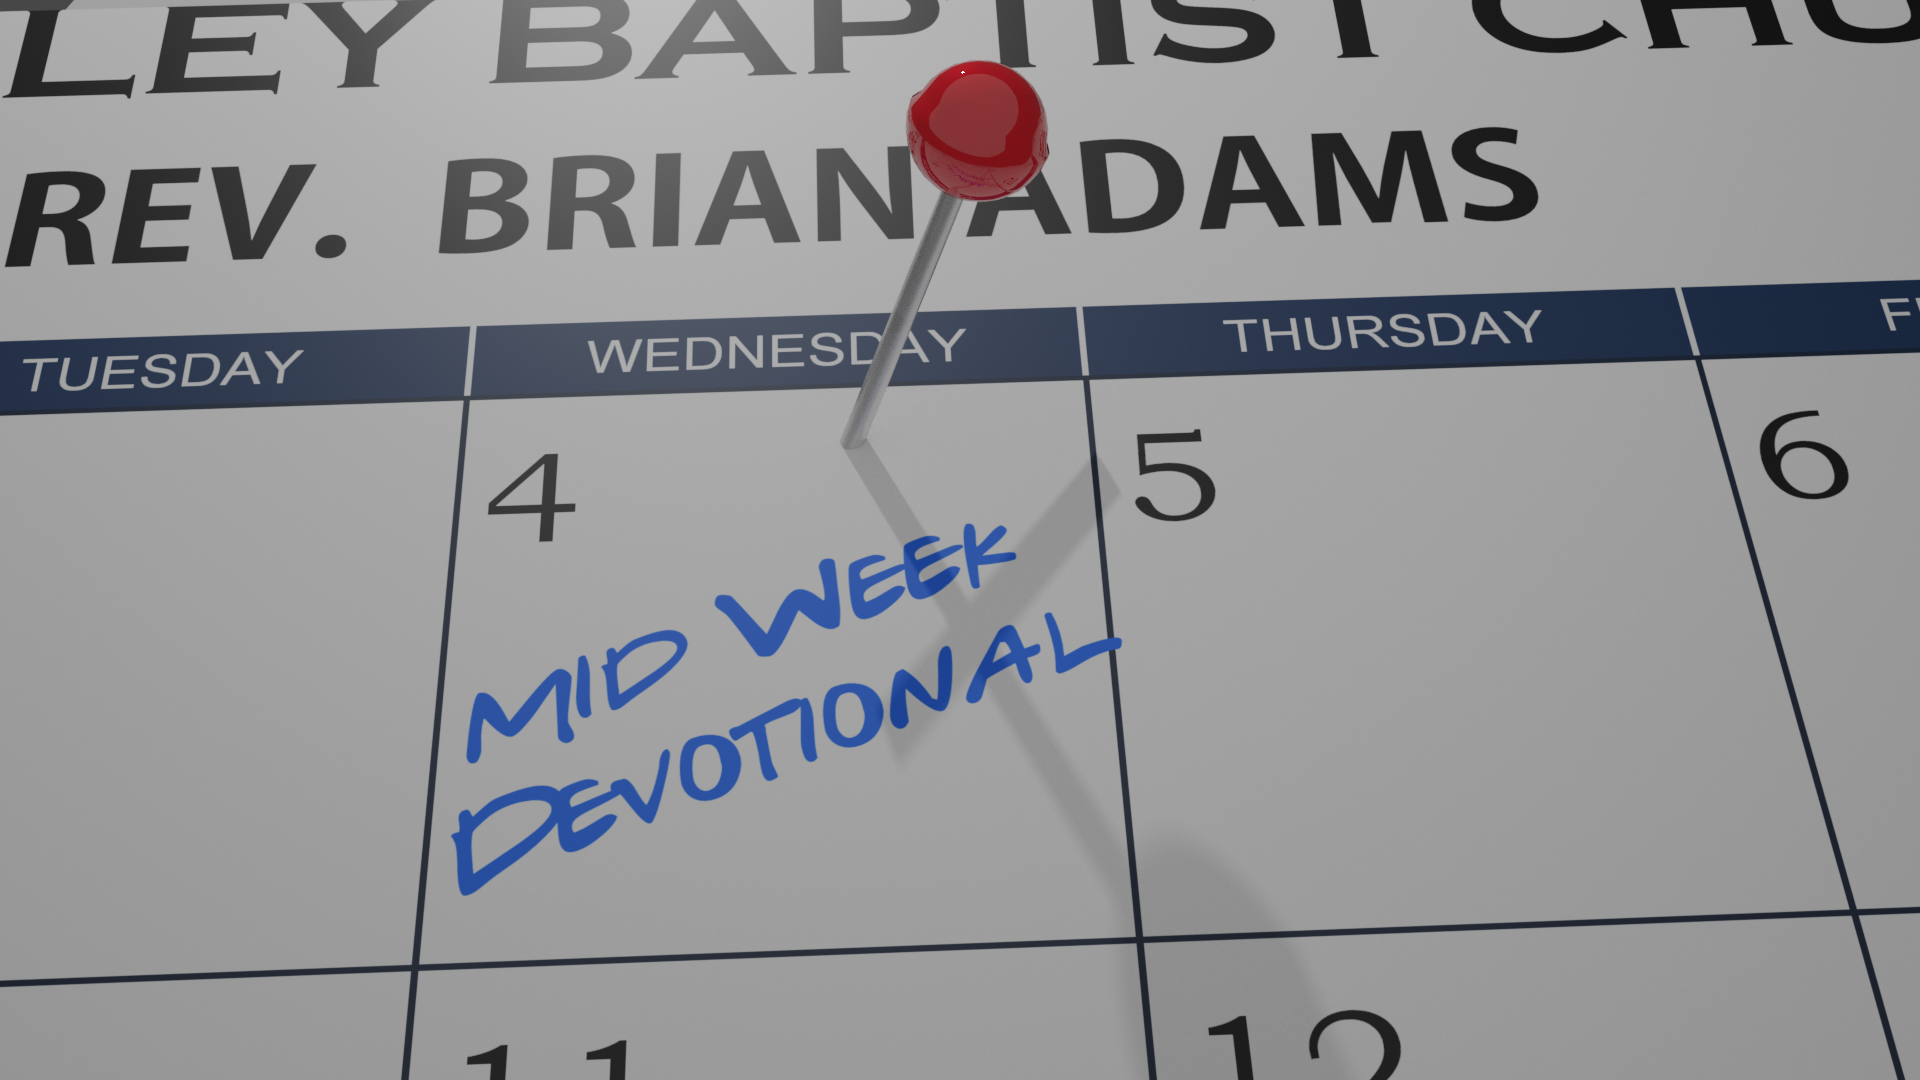 Mid-Week Devotional 11/18/20